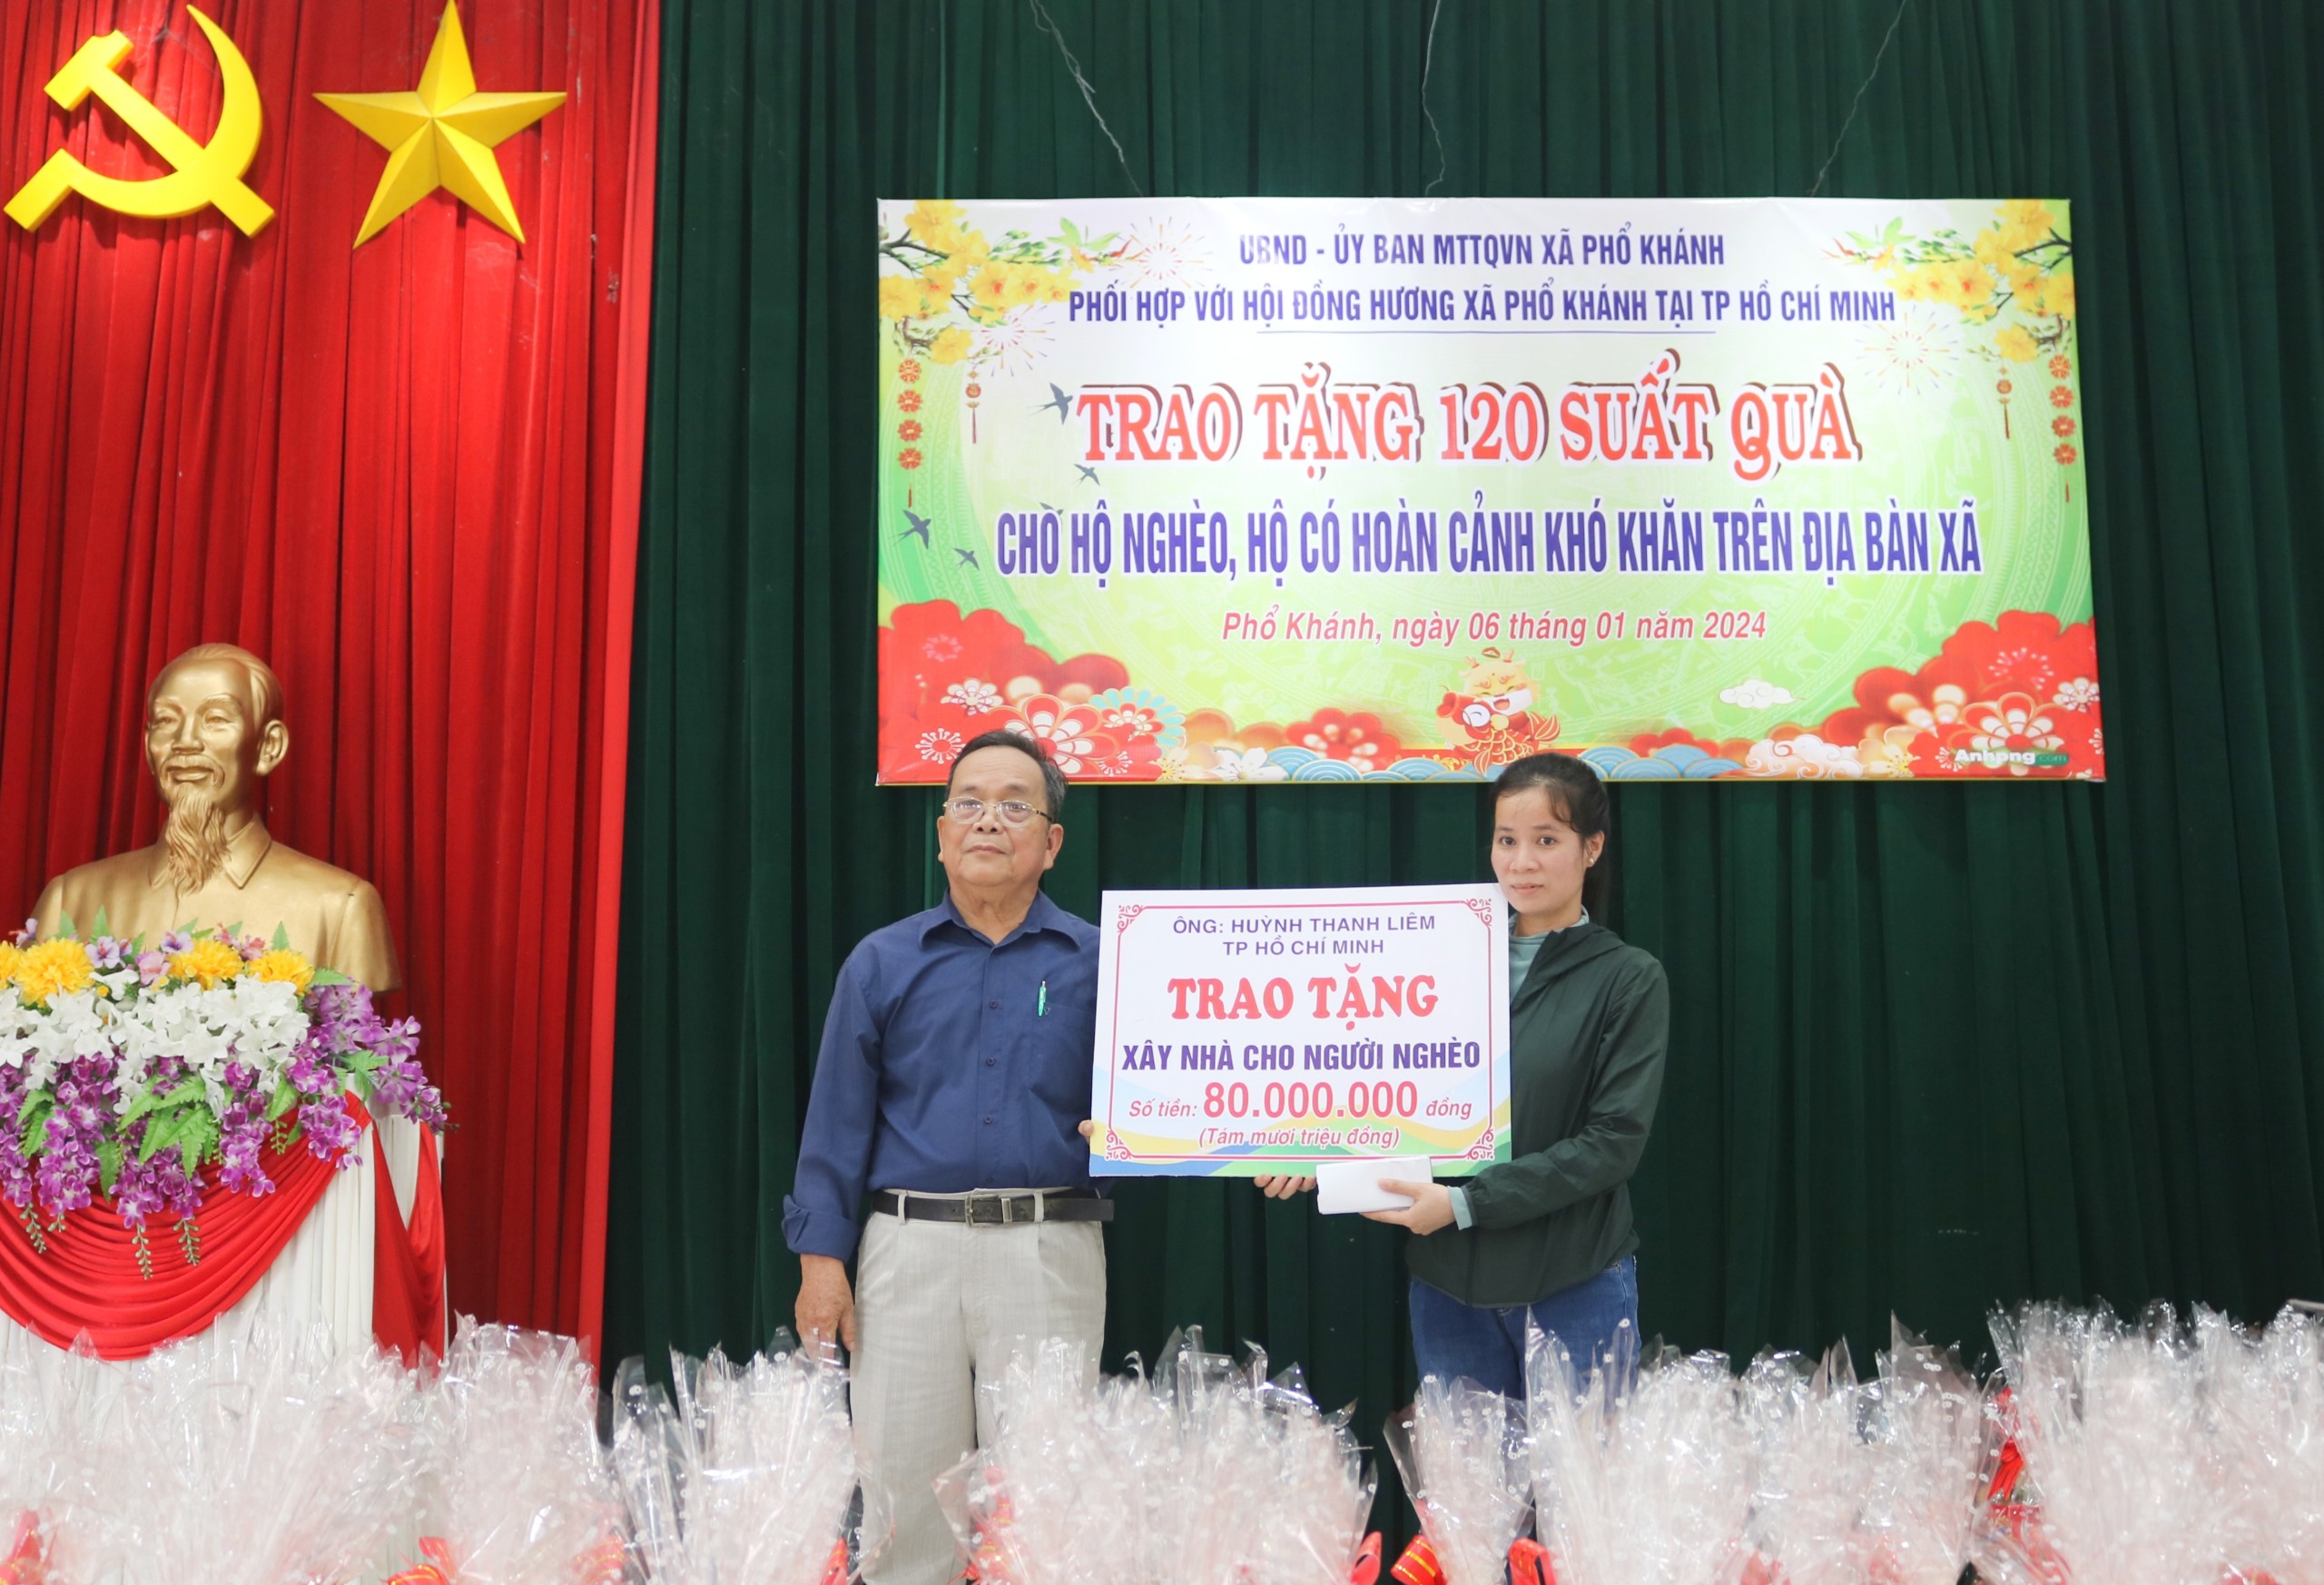 Trao tặng 120 suất quà cho hộ nghèo xã Phổ Khánh